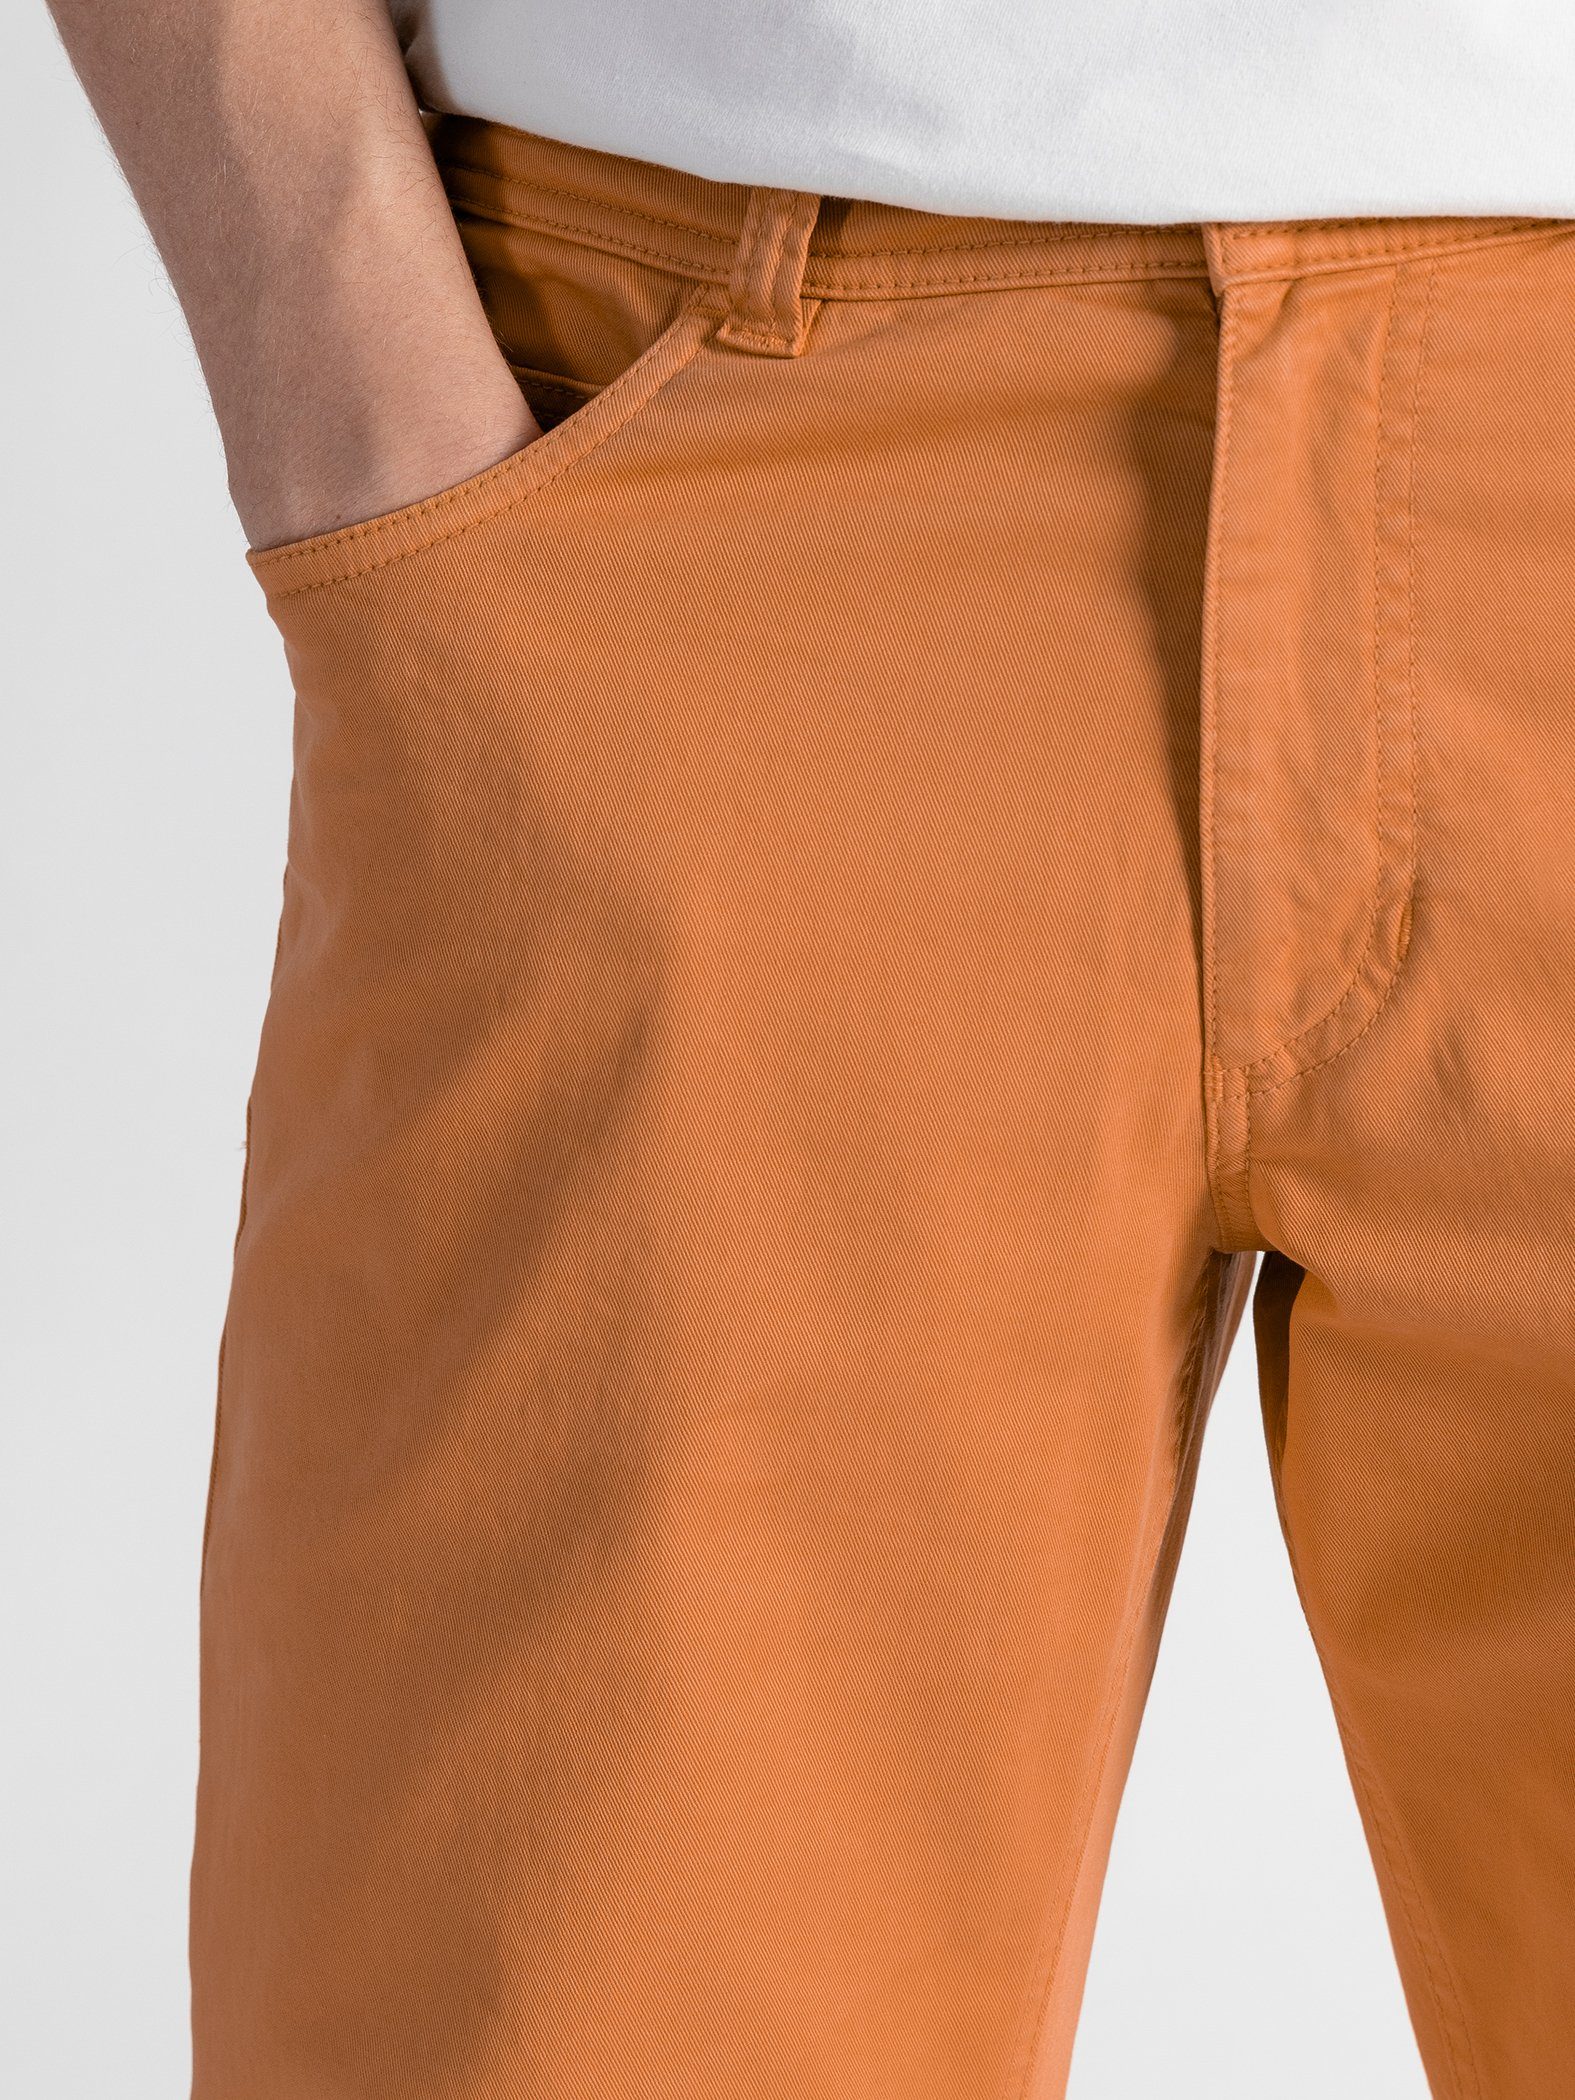 TwoMates Stoffhose GOTS-zertifiziert Orange mit elastischem Bund, 5-Pocket Farbauswahl,